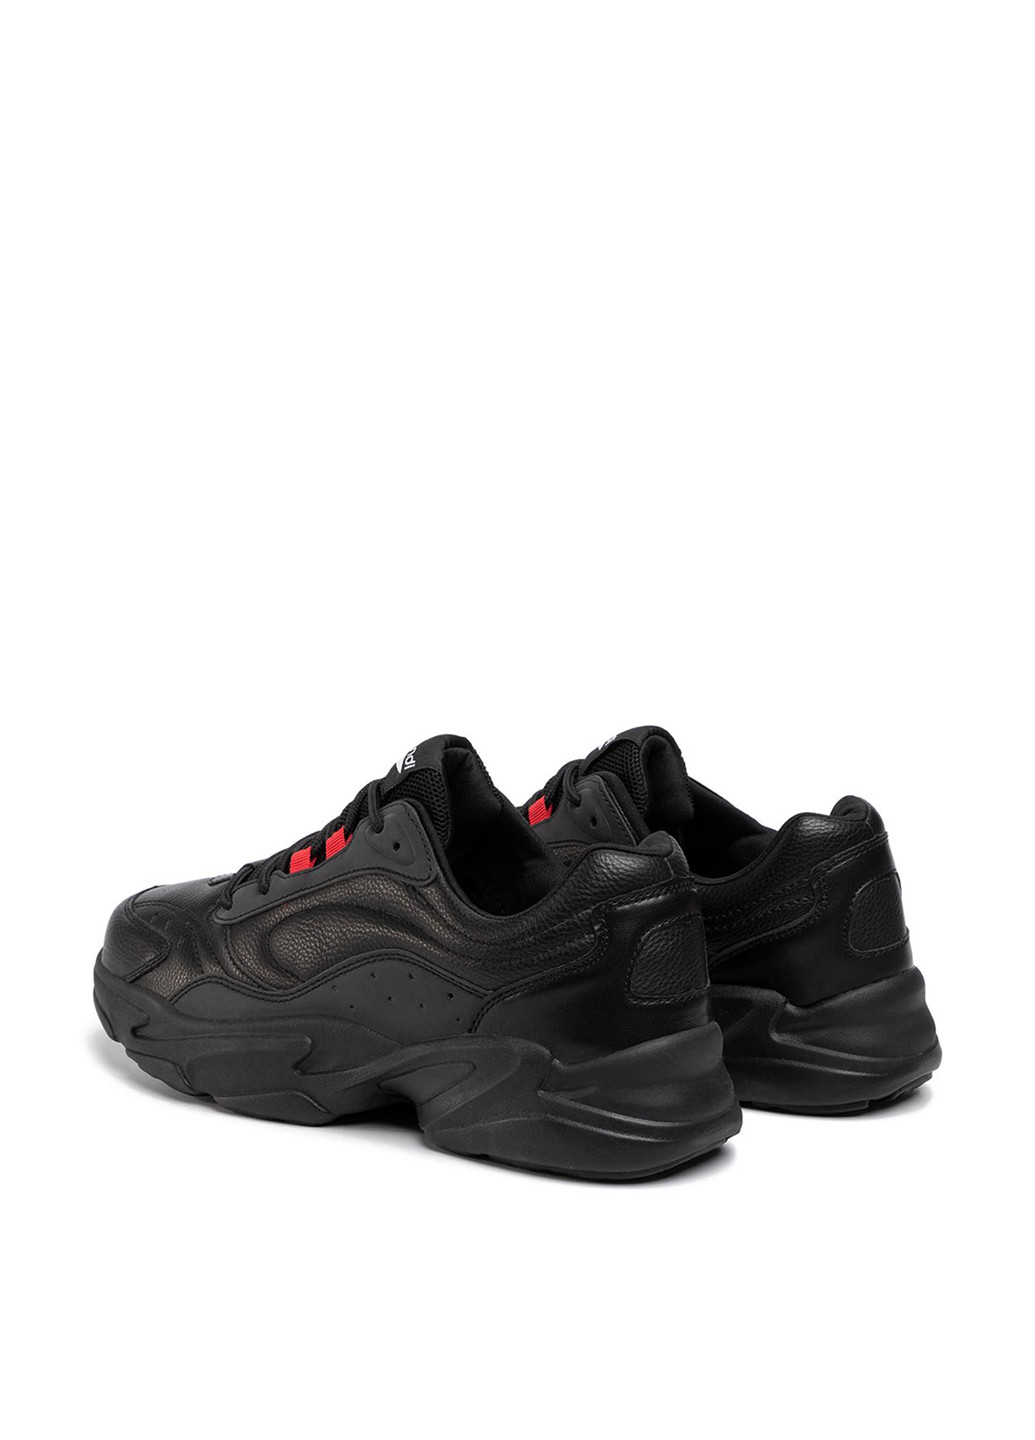 Черные демисезонные кросівки Sprandi MF19060-1